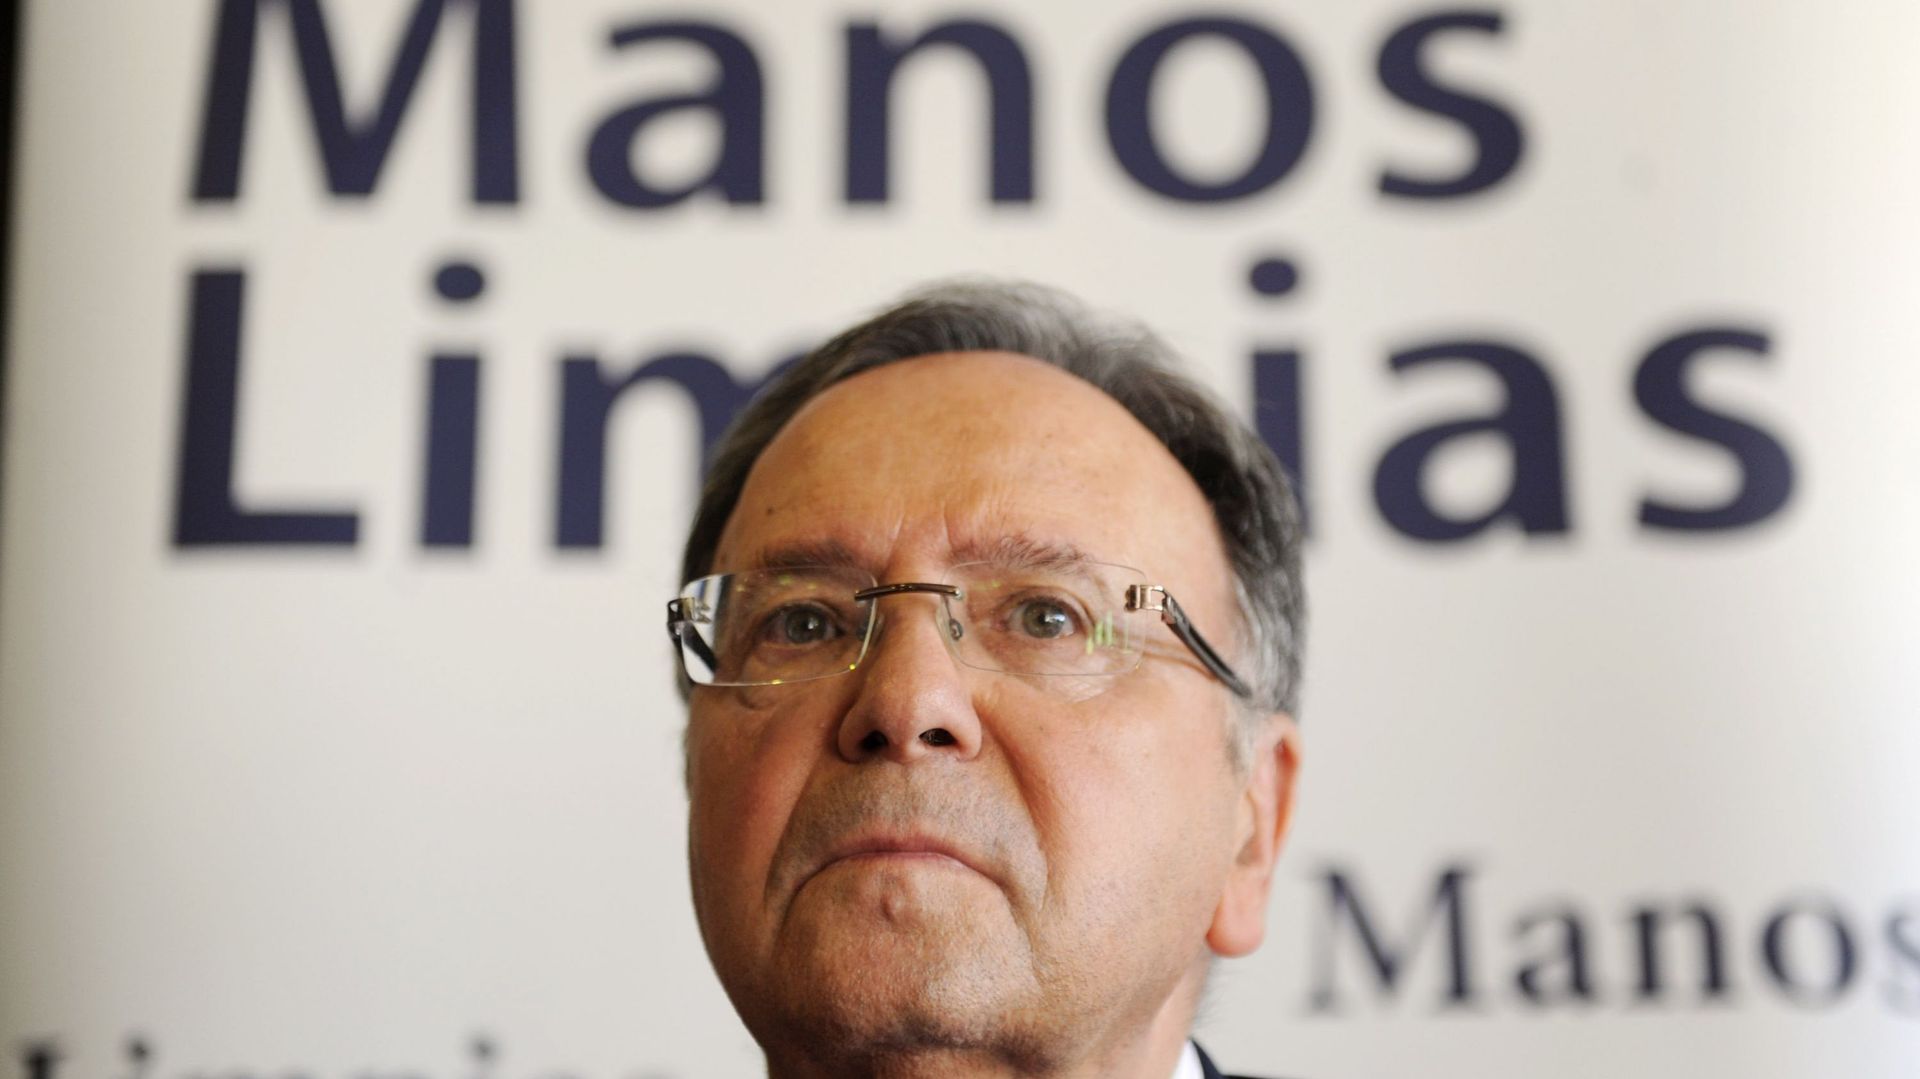 Miguel Bernad: Le secrétaire général de Manos Limpias (Mains propres) - organisation considérée comme étant d'extrême droite.